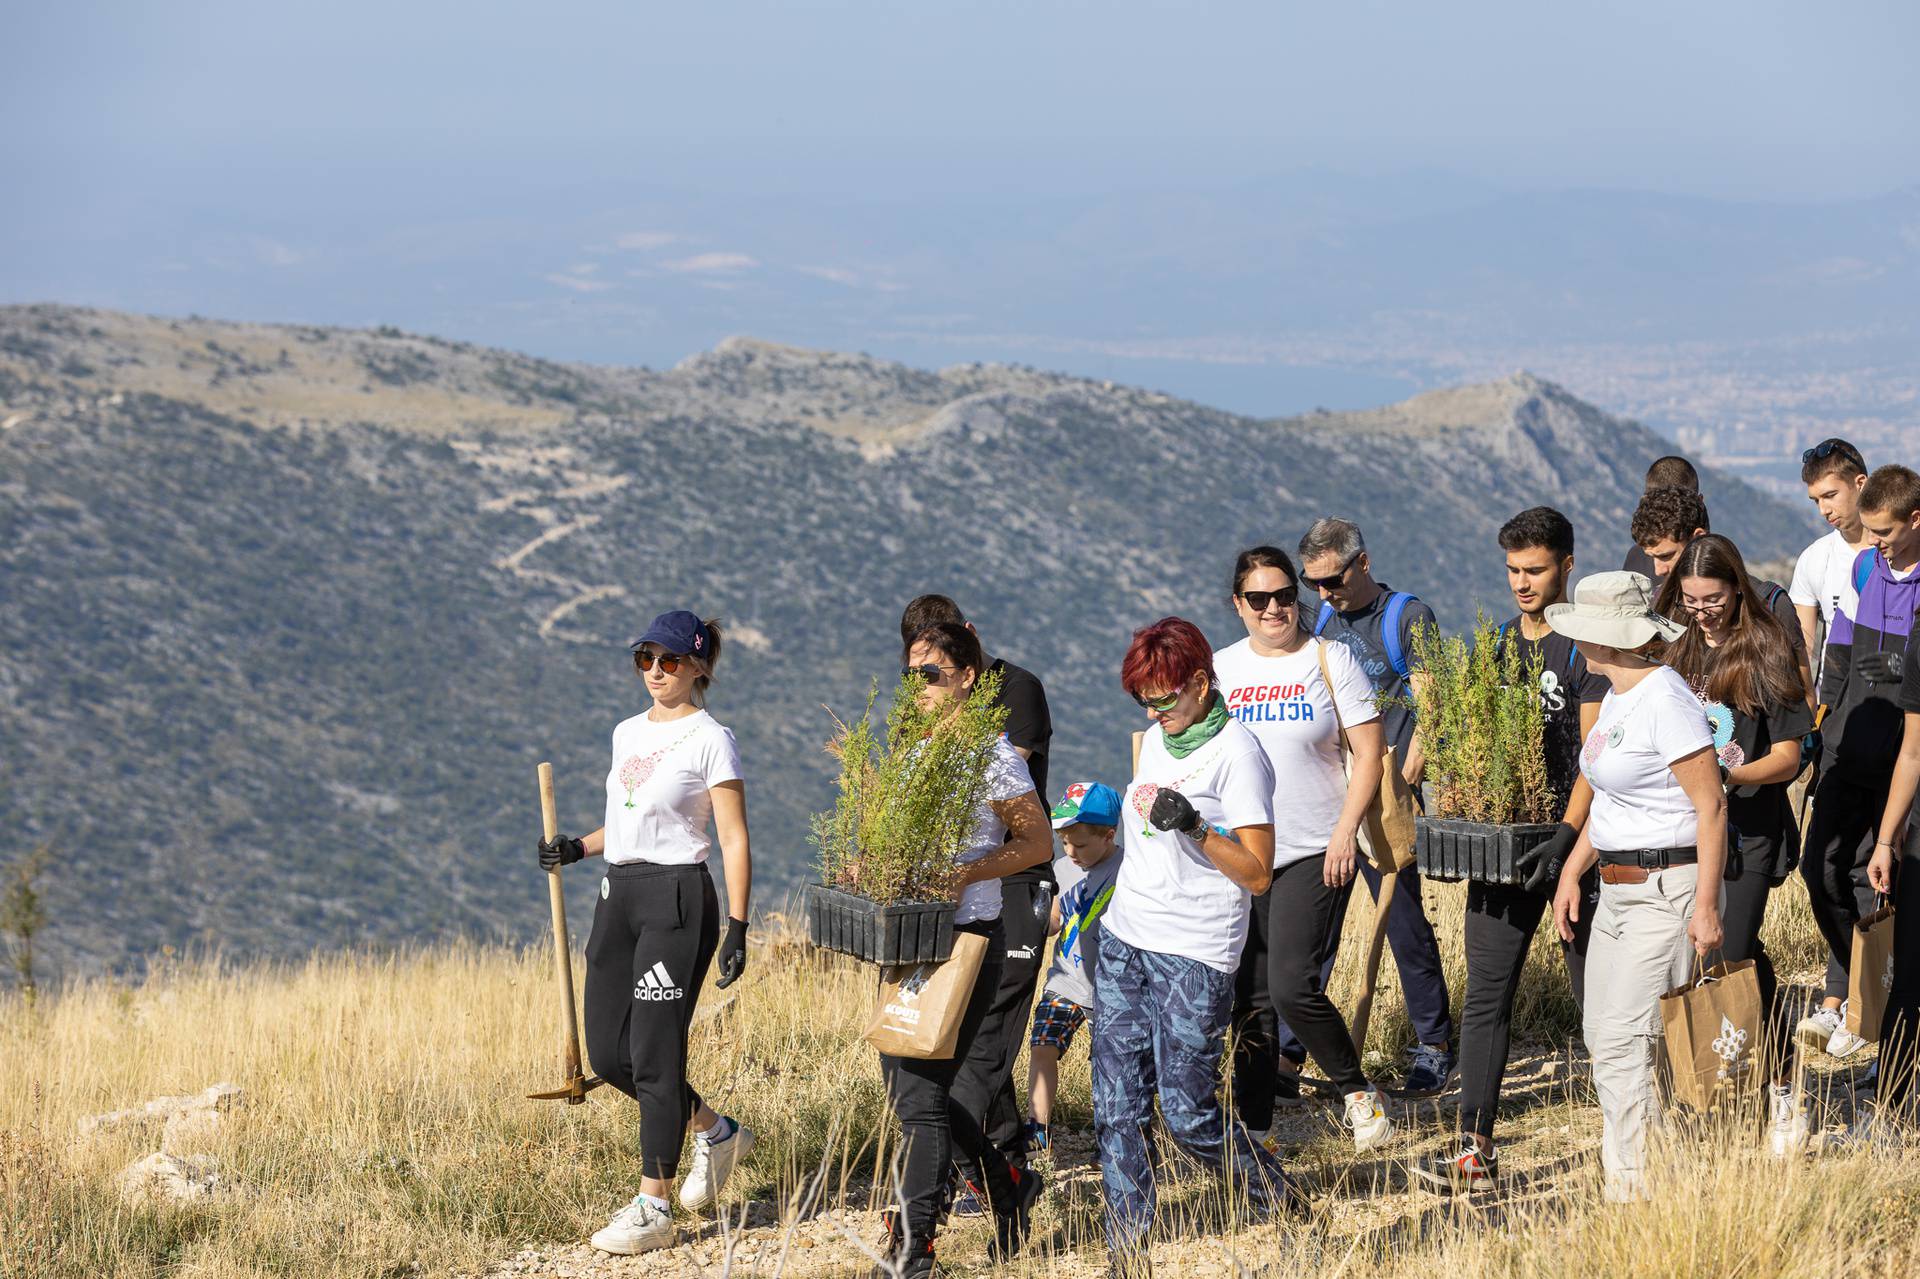 Tri srca u akciji pošumljavanja opožarenih područja u Dalmaciji